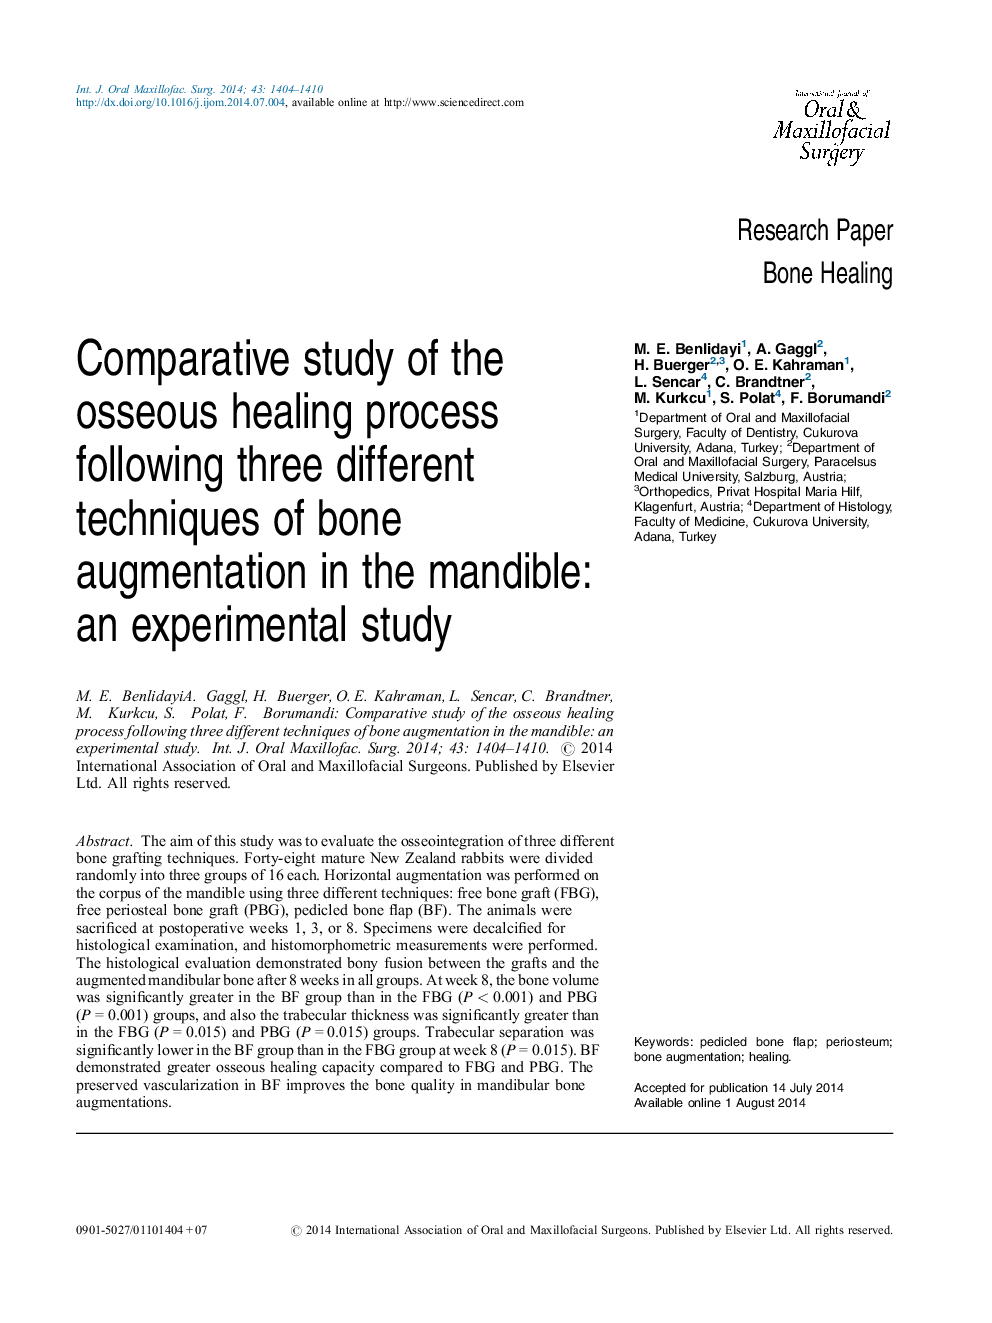 بررسی مقایسه ای پروسه بهبودی استخوان زیر سه تکنیک مختلف تقویت استخوان در اندام تحتانی: یک مطالعه تجربی 